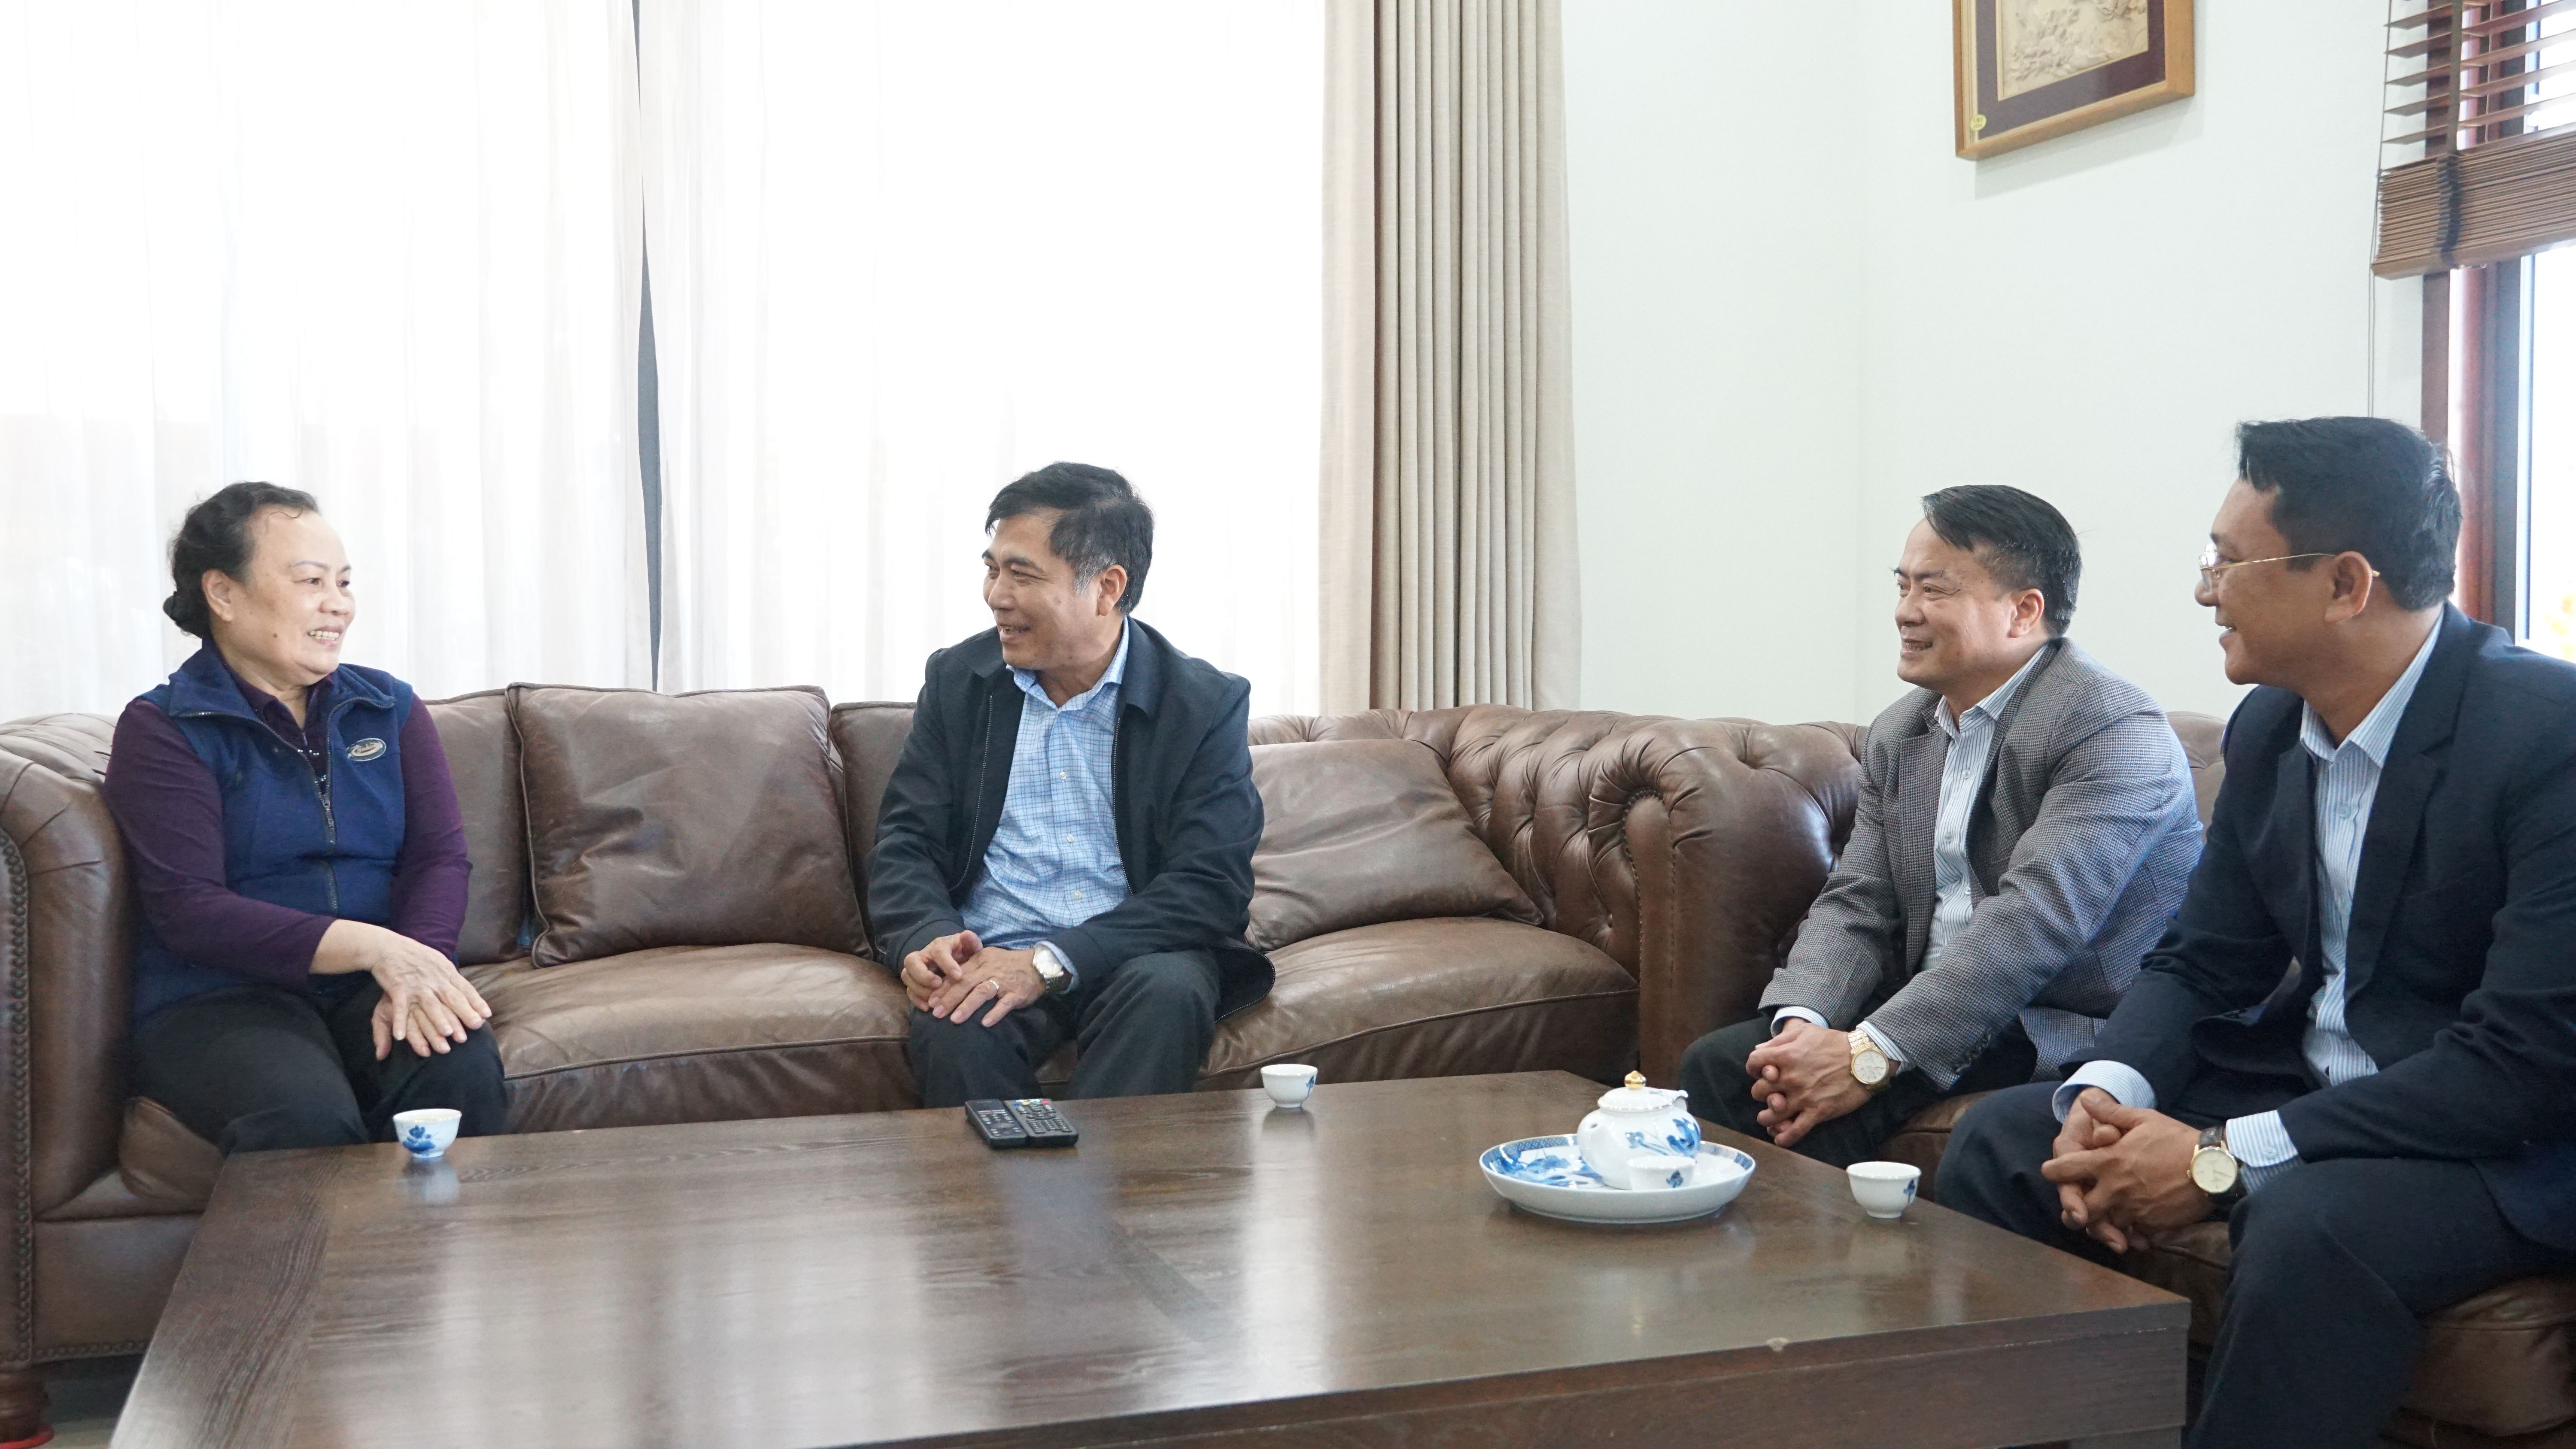 Đồng chí Phó Chủ tịch Thường trực UBND tỉnh Đoàn Ngọc Lâm trò chuyện, hỏi thăm sức khỏe gia đồng chí Đinh Hữu Trung, nguyên Phó Chủ tịch UBND tỉnh.